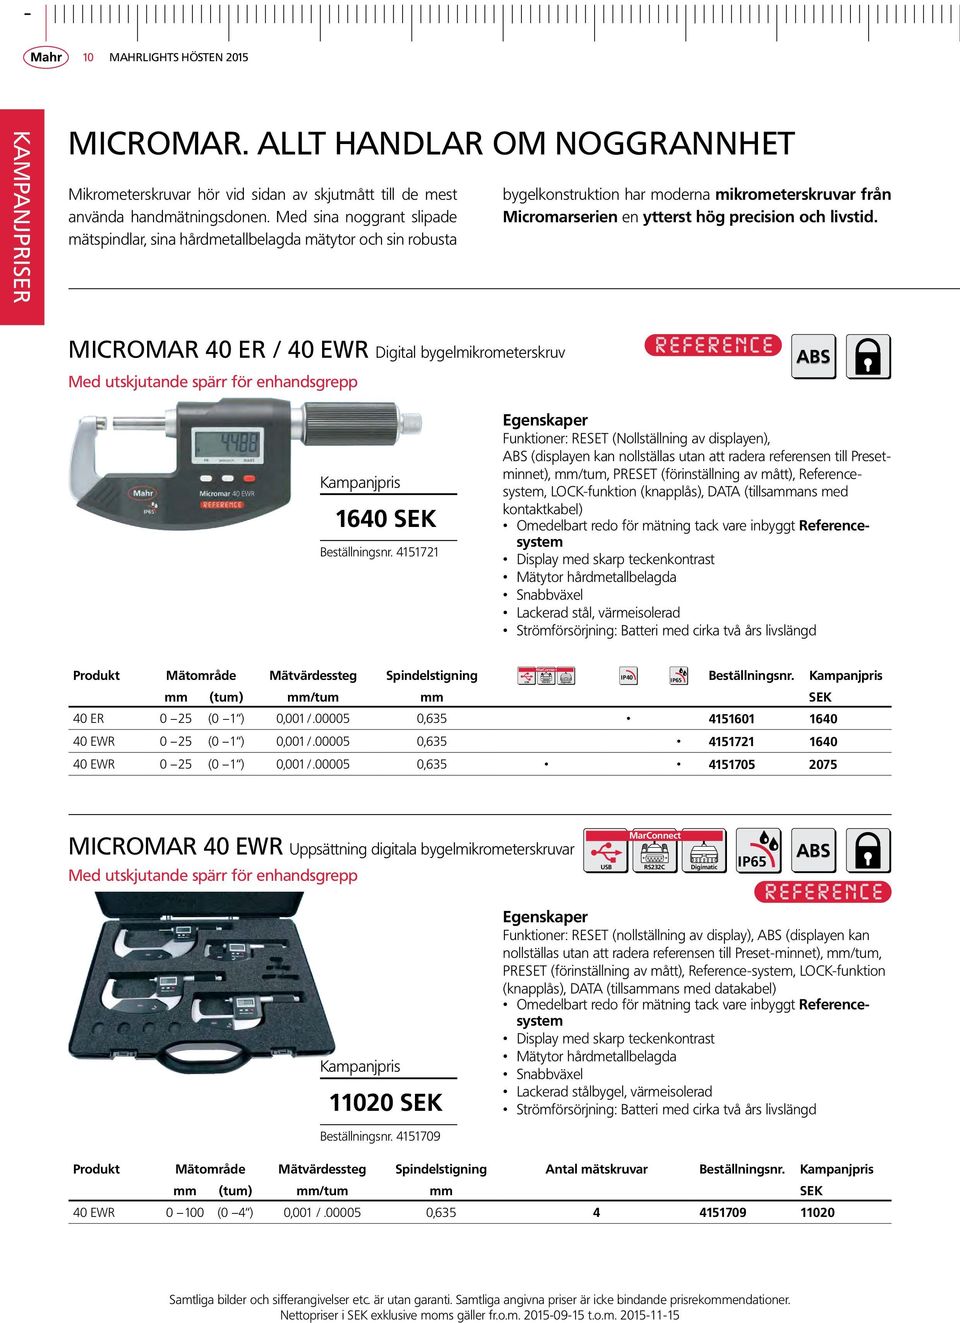 MICROMAR 40 ER / 40 EWR Digital bygelmikrometerskruv Med utskjutande spärr för enhandsgrepp ABS 1640 SEK Beställningsnr.